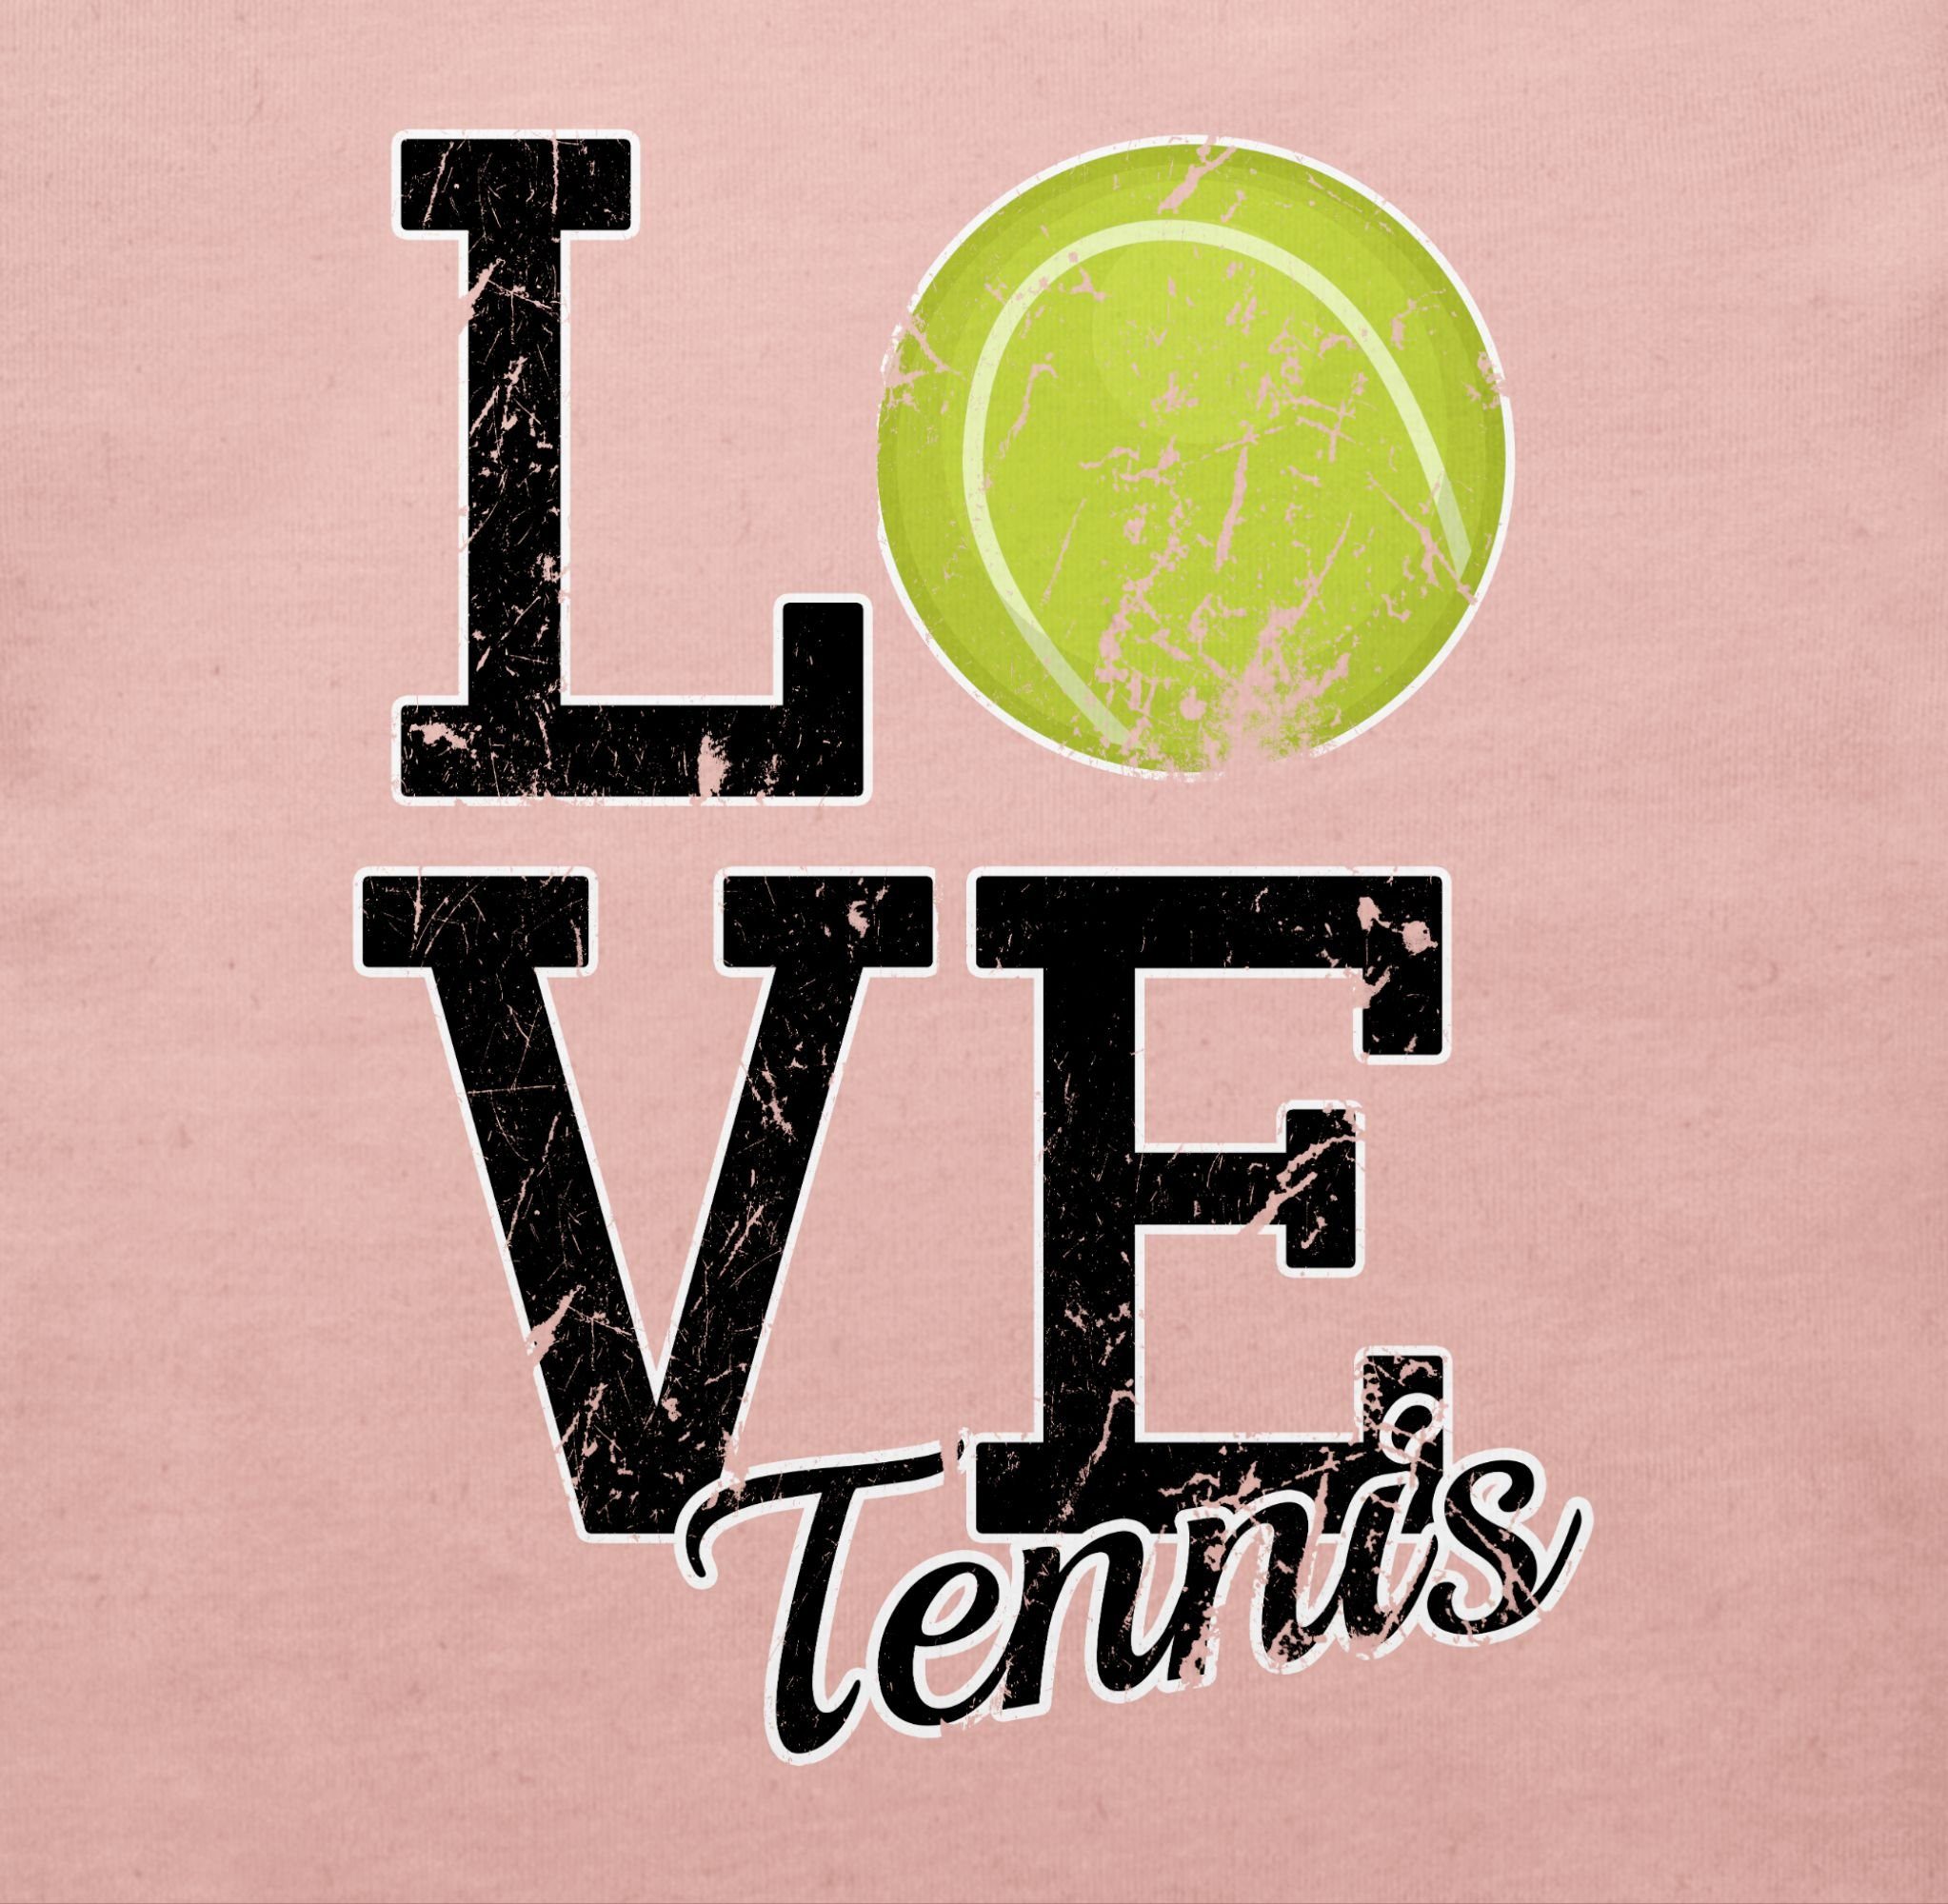 Shirtracer T-Shirt Love Tennis Babyrosa & Sport Baby Bewegung 3